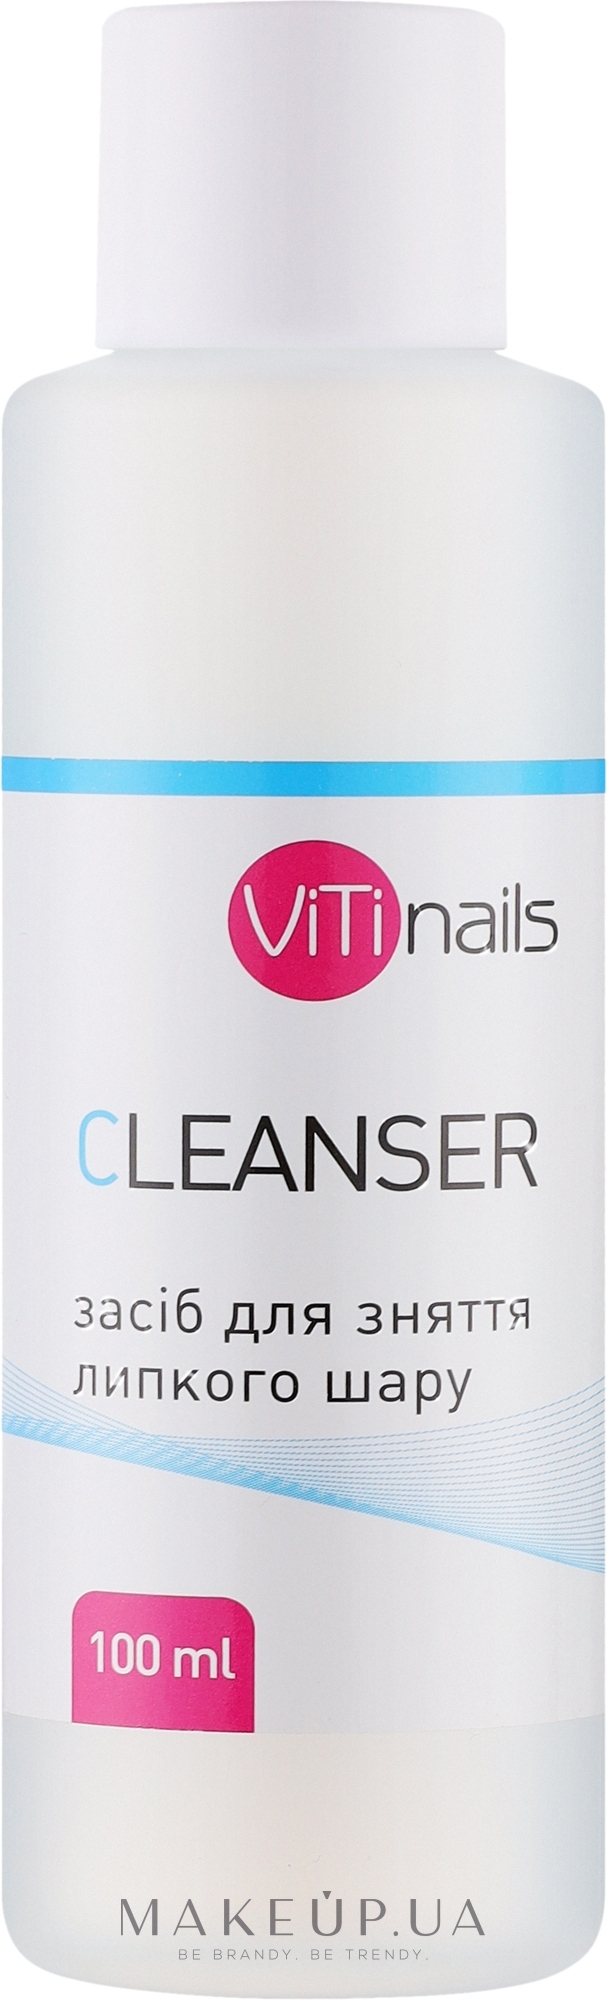 Засіб для зняття липкого шару - Vitinails Cleanser — фото 100ml